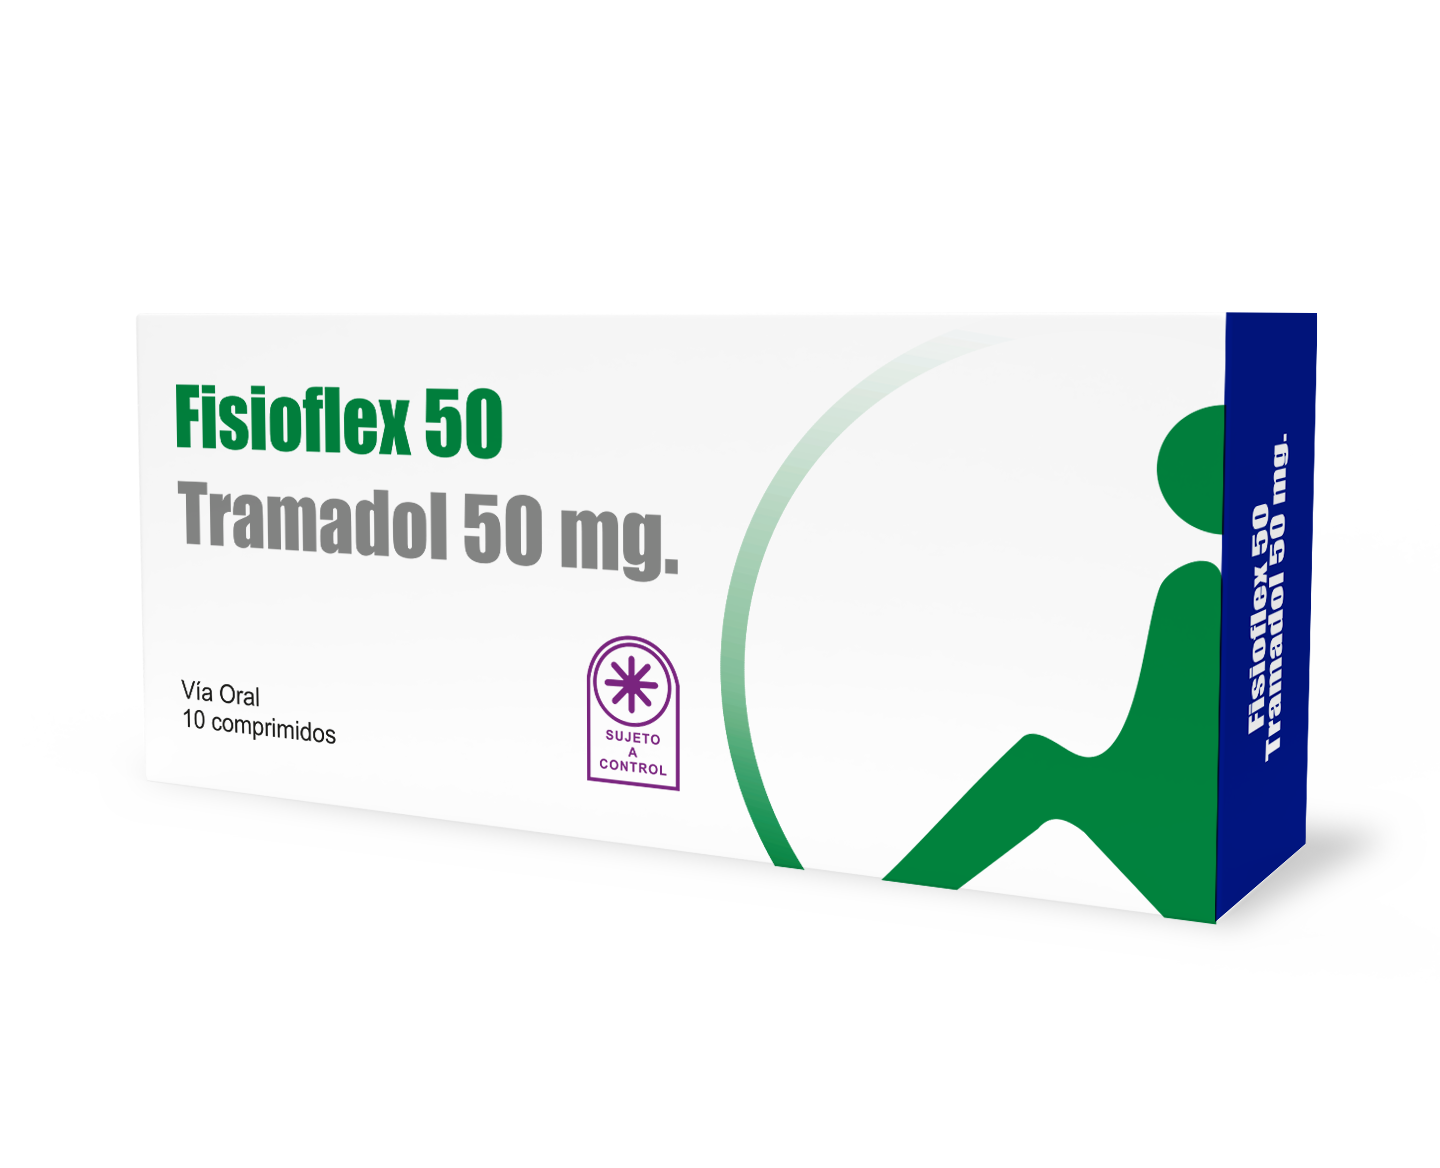 Fisioflex 50